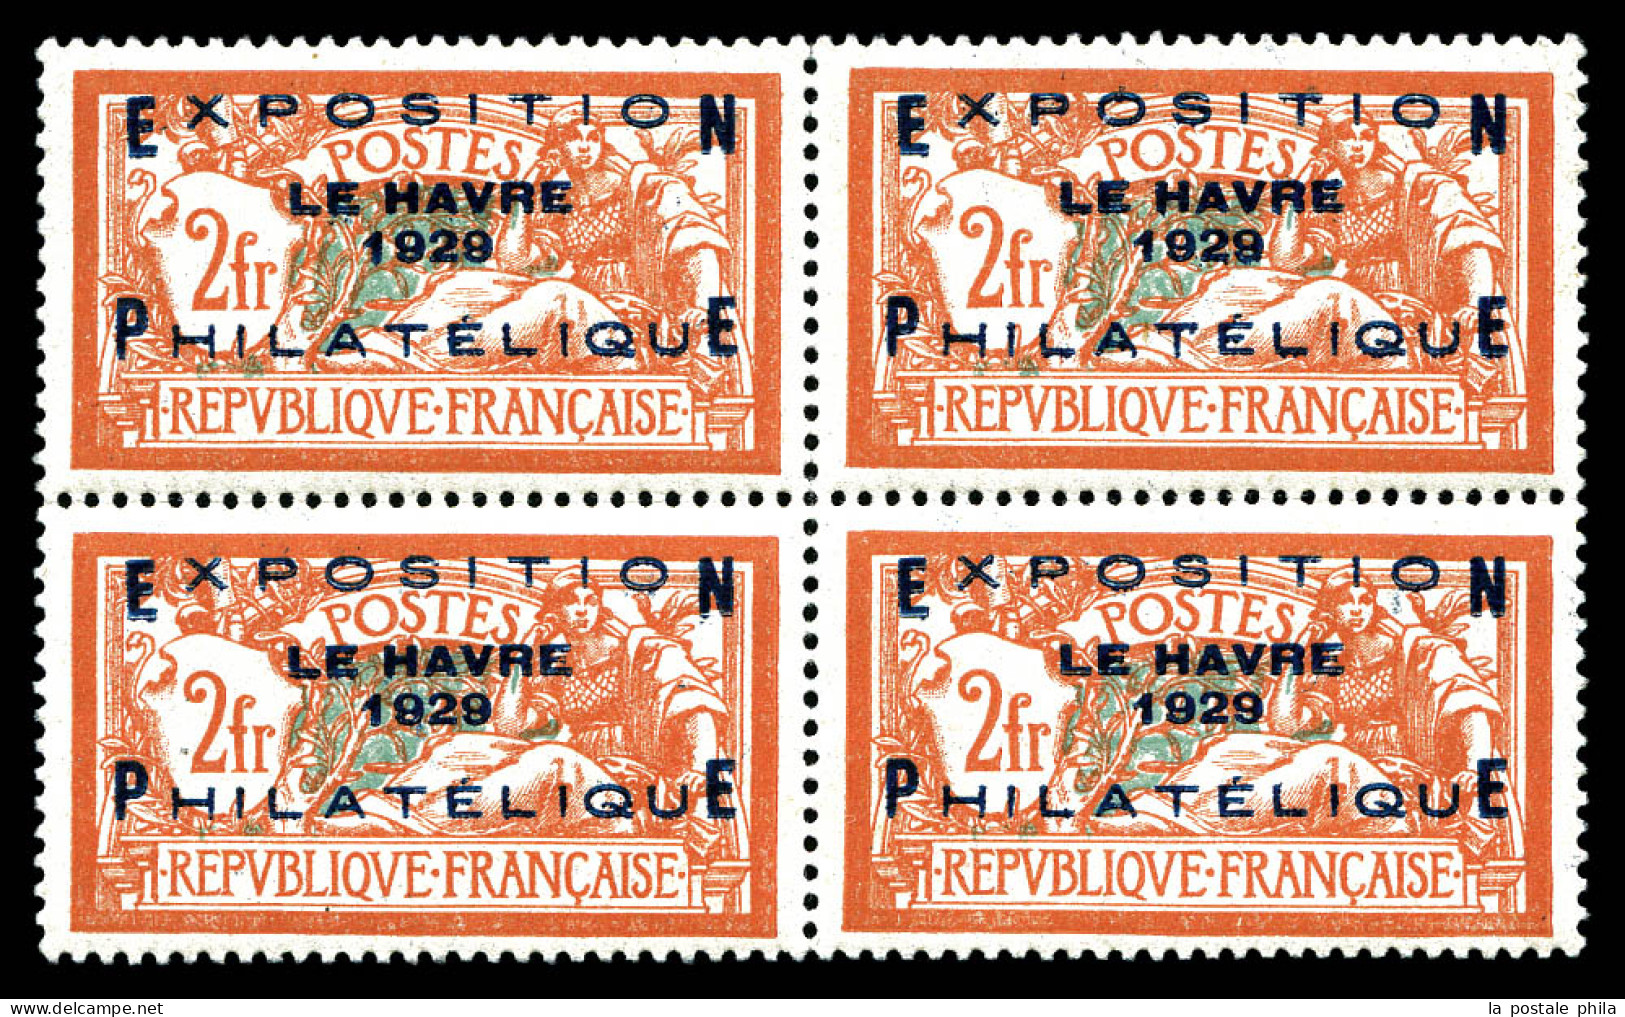 ** N°257A, Exposition Du Havre 1929 En Bloc De Quatre, Fraîcheur Postale, Très Bon Centrage. SUP. R.R. (certificat)  Qua - Nuovi